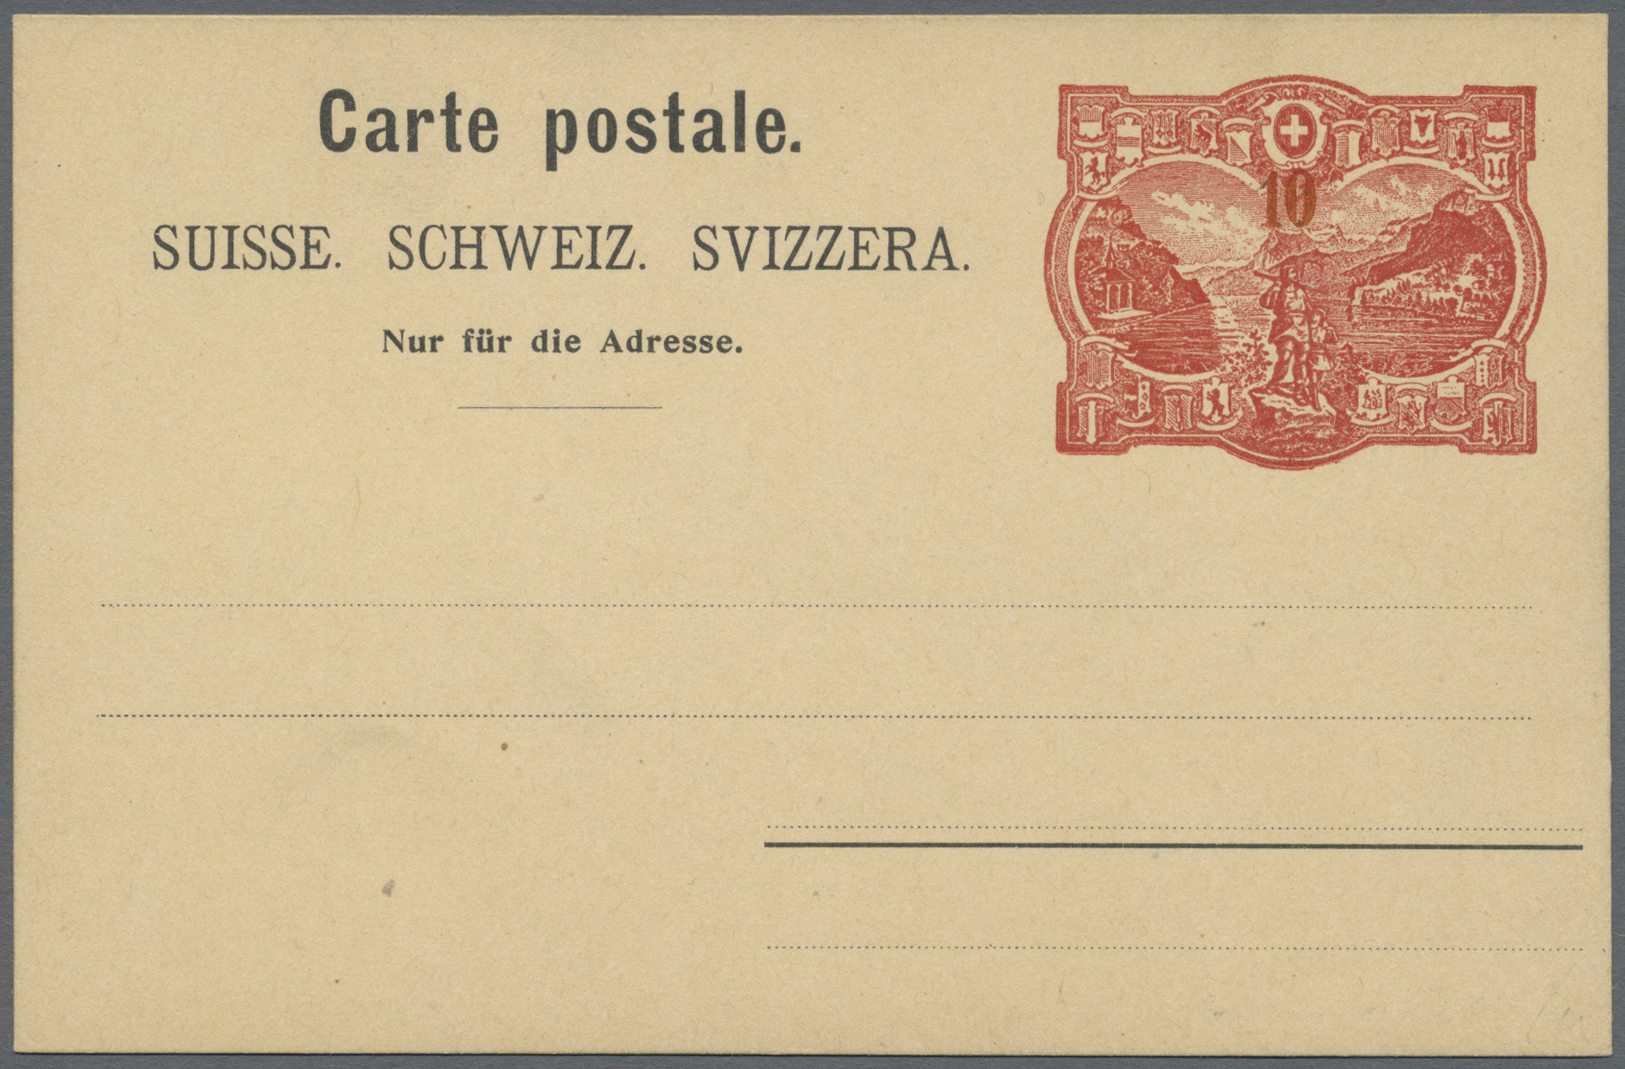 GA Schweiz - Ganzsachen: 1905, GANZSACHEN-Karte „RÜTLI-Essay" Zu 10 Rp. Mit Großem Wertschild 'Rütli, Tellvater U - Entiers Postaux